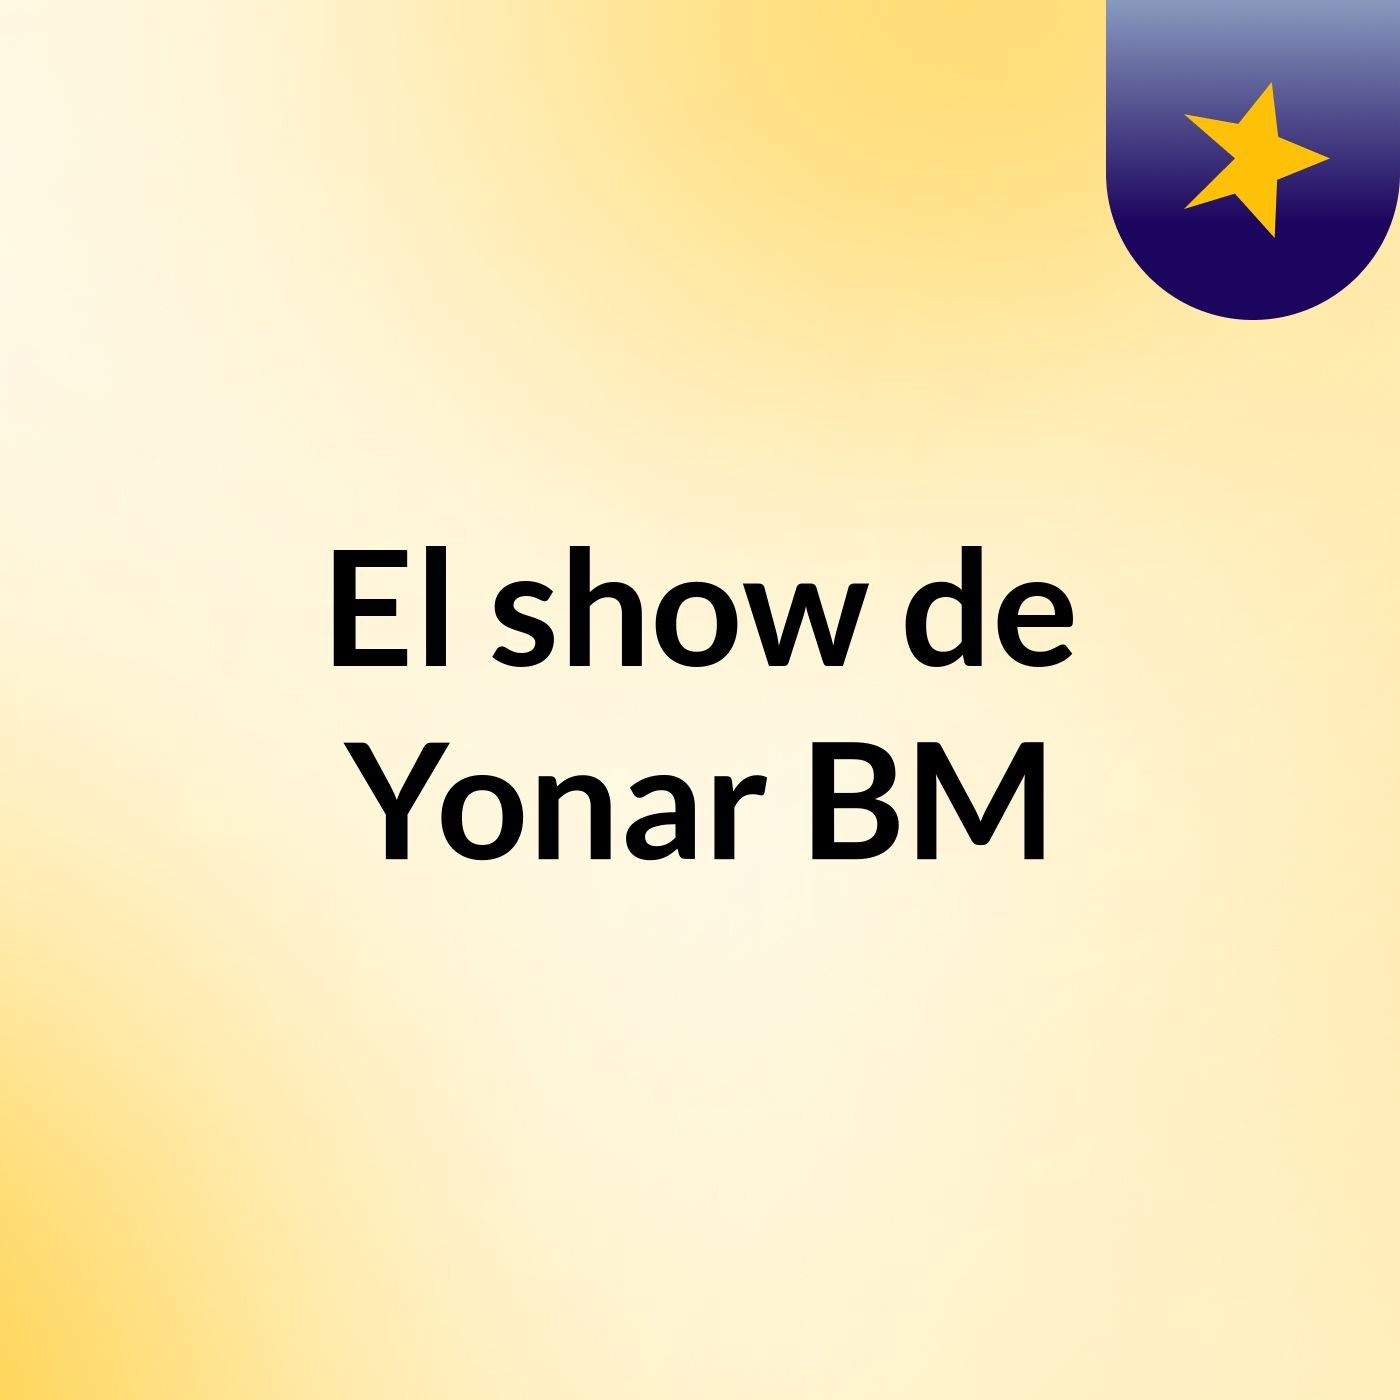 El show de Yonar BM